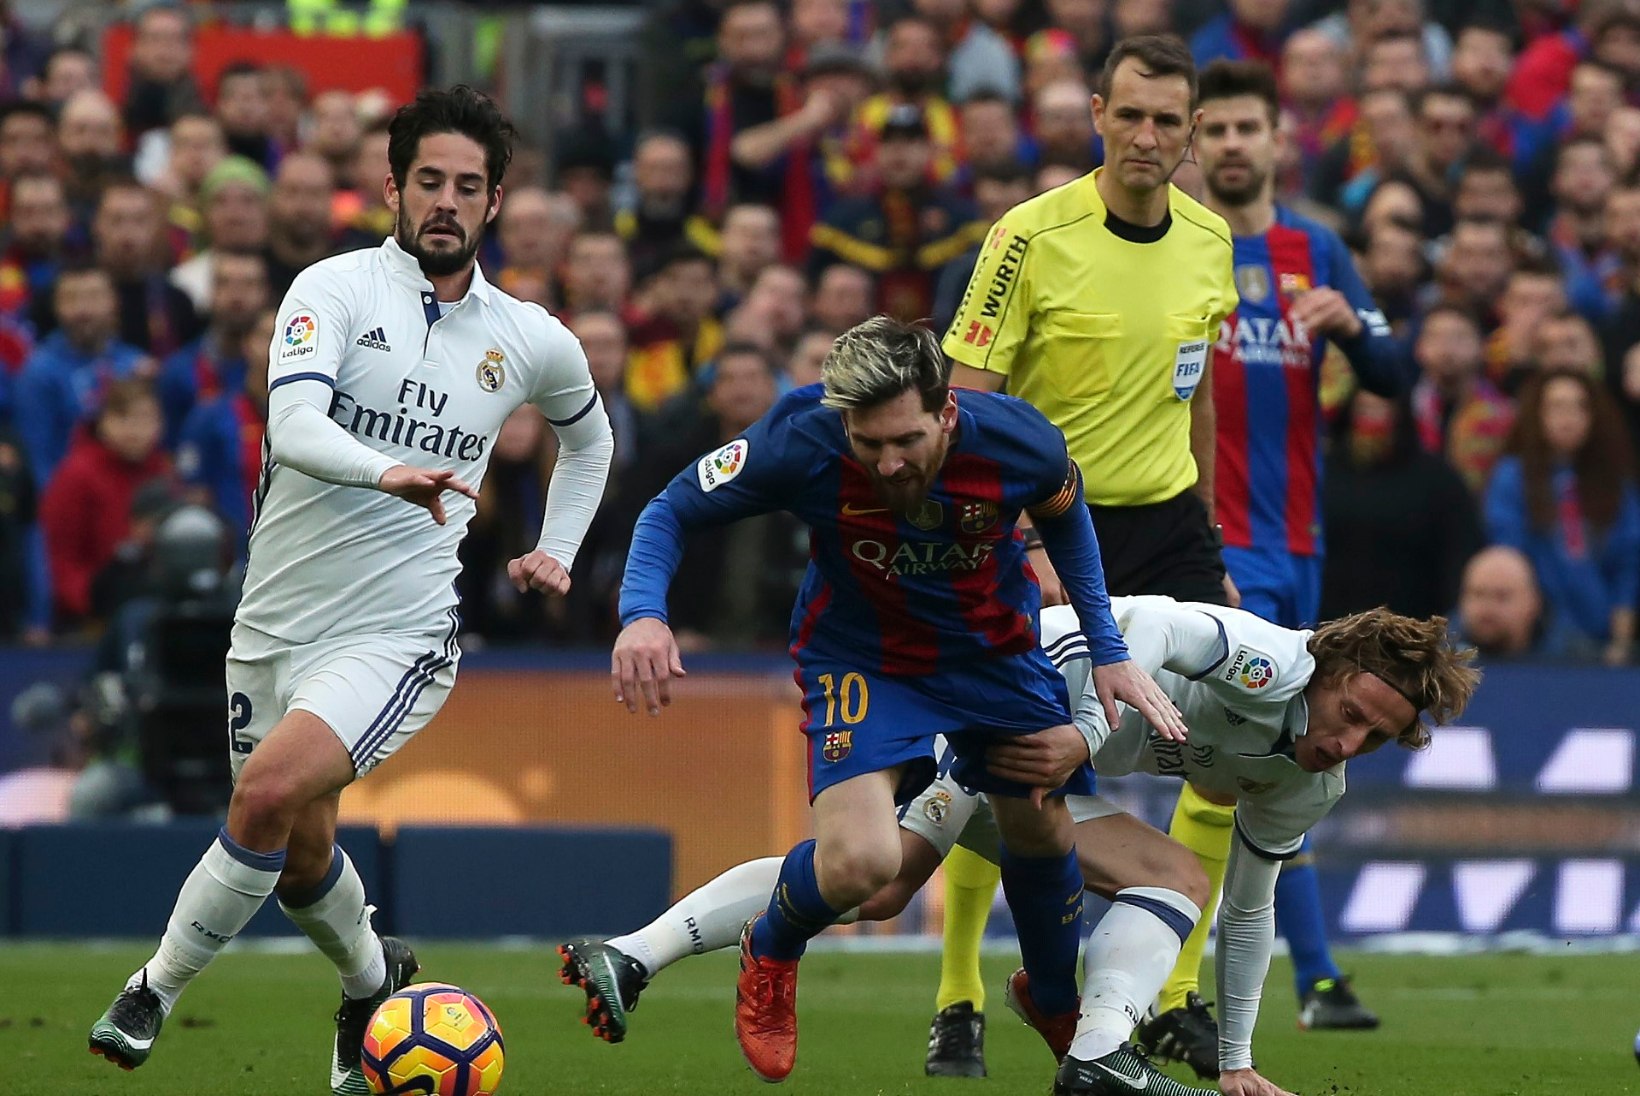 NII SEE JUHTUS | Sport 3.12: Barcelona ja Madridi Real pidasid hooaja esimese El Clasico, saalihoki MMi avamatš